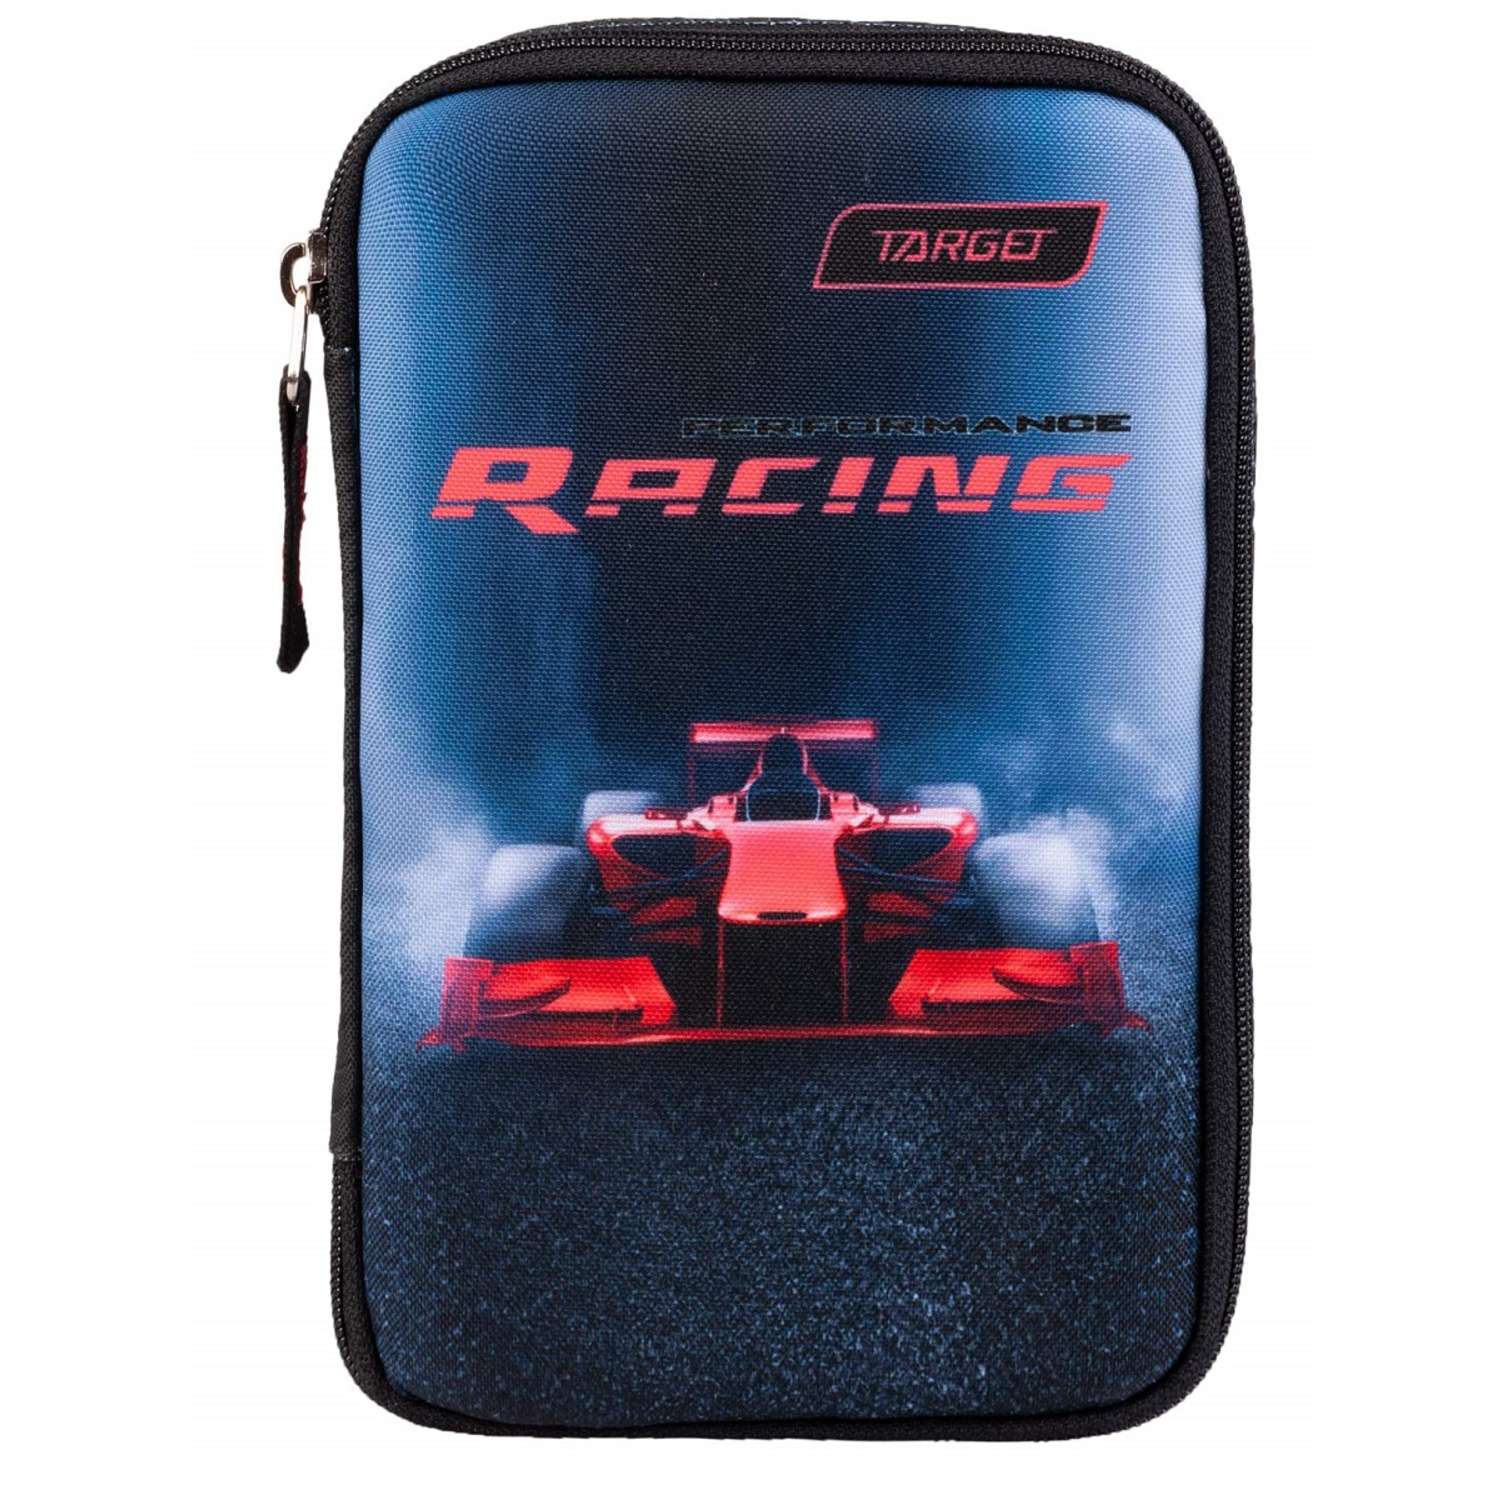 Рюкзак Target суперлегкий с пеналом F1 Racing 27053 - фото 8